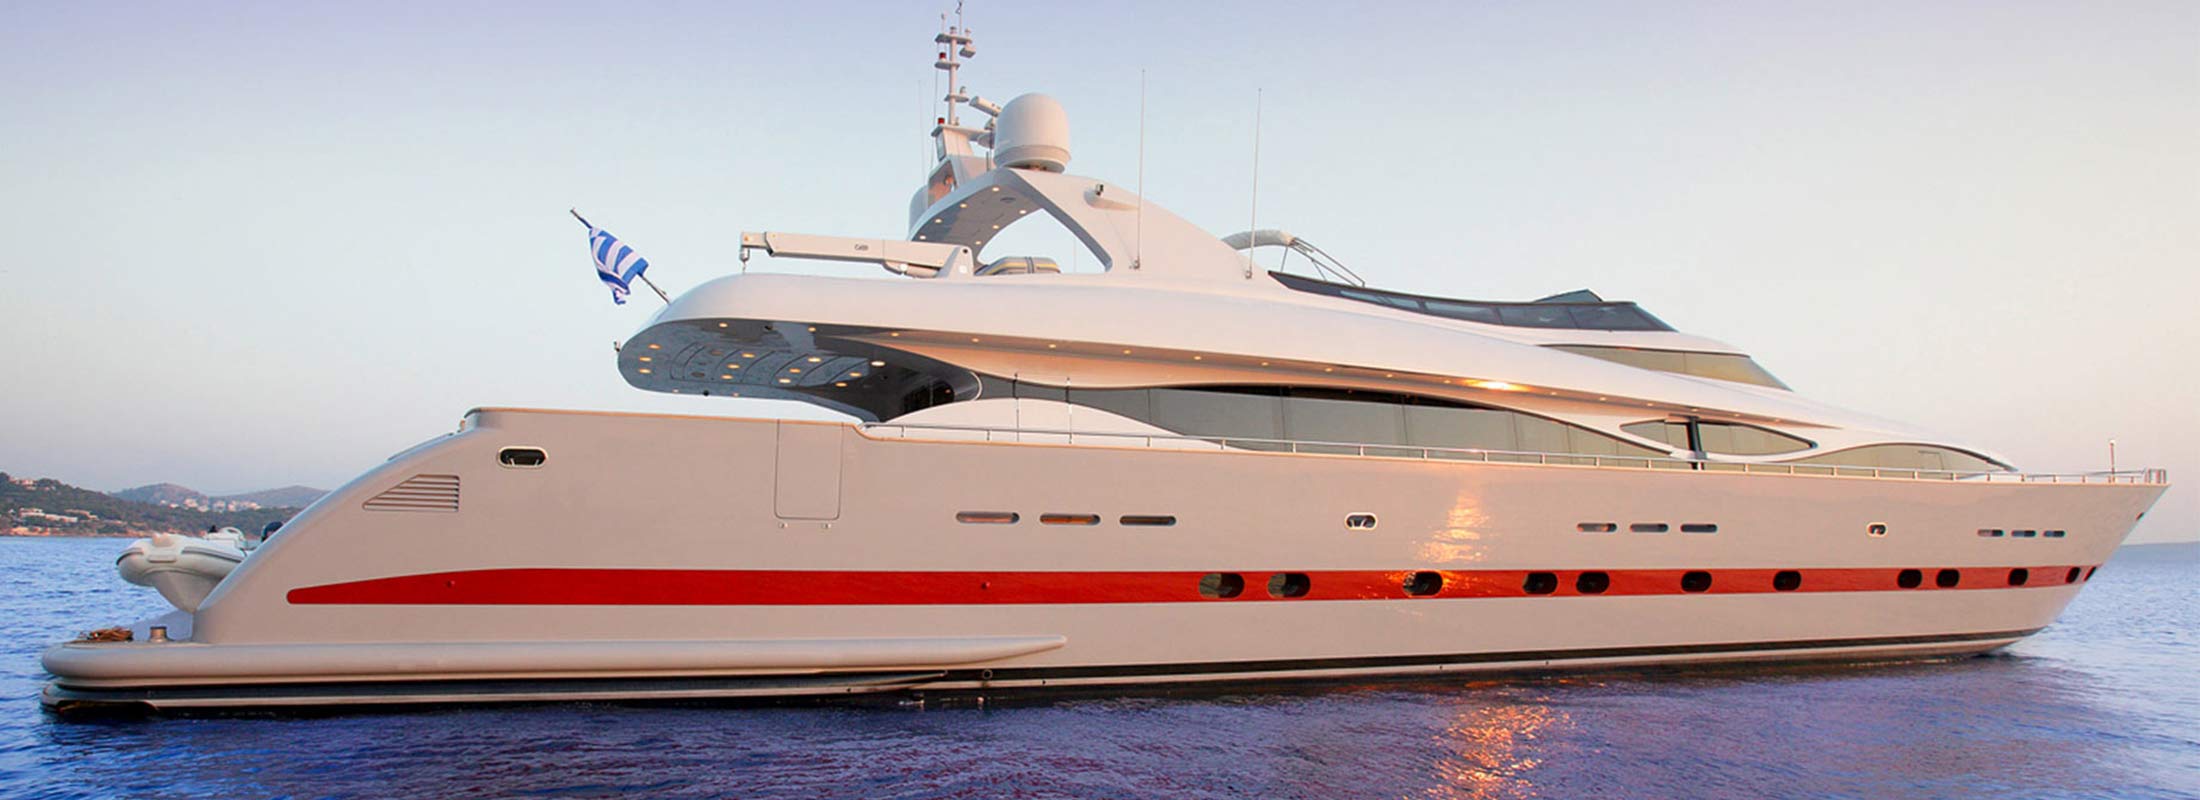 Glaros Motor Yacht for Charter Mediterranean slider 1